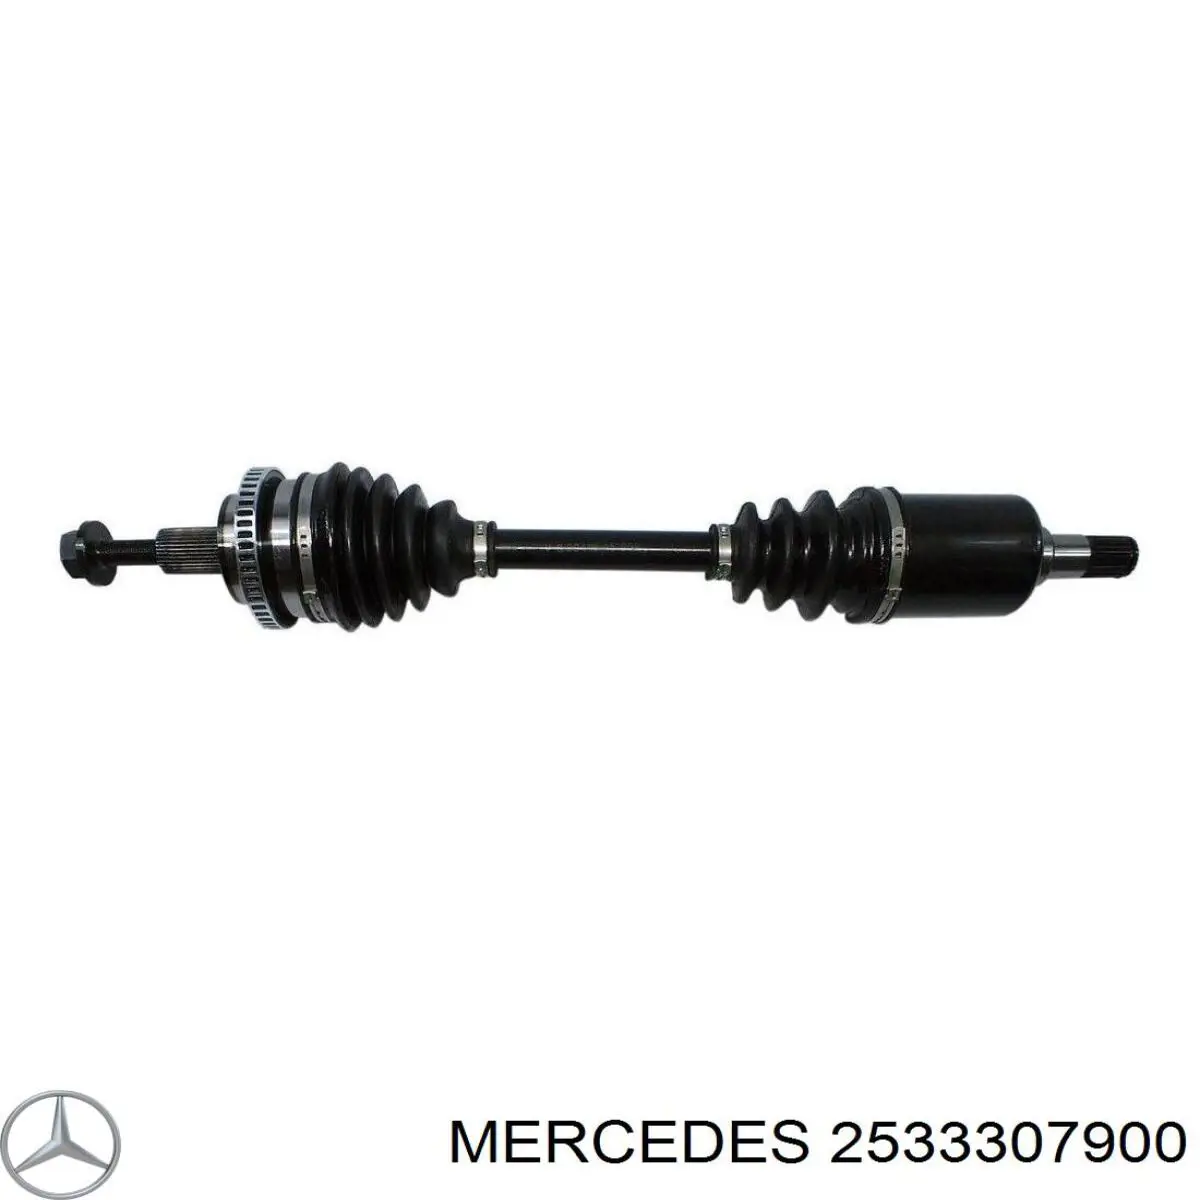 Левый привод Мерседес-бенц ЖЕ ЭЛ СИ C253 (Mercedes GLC)